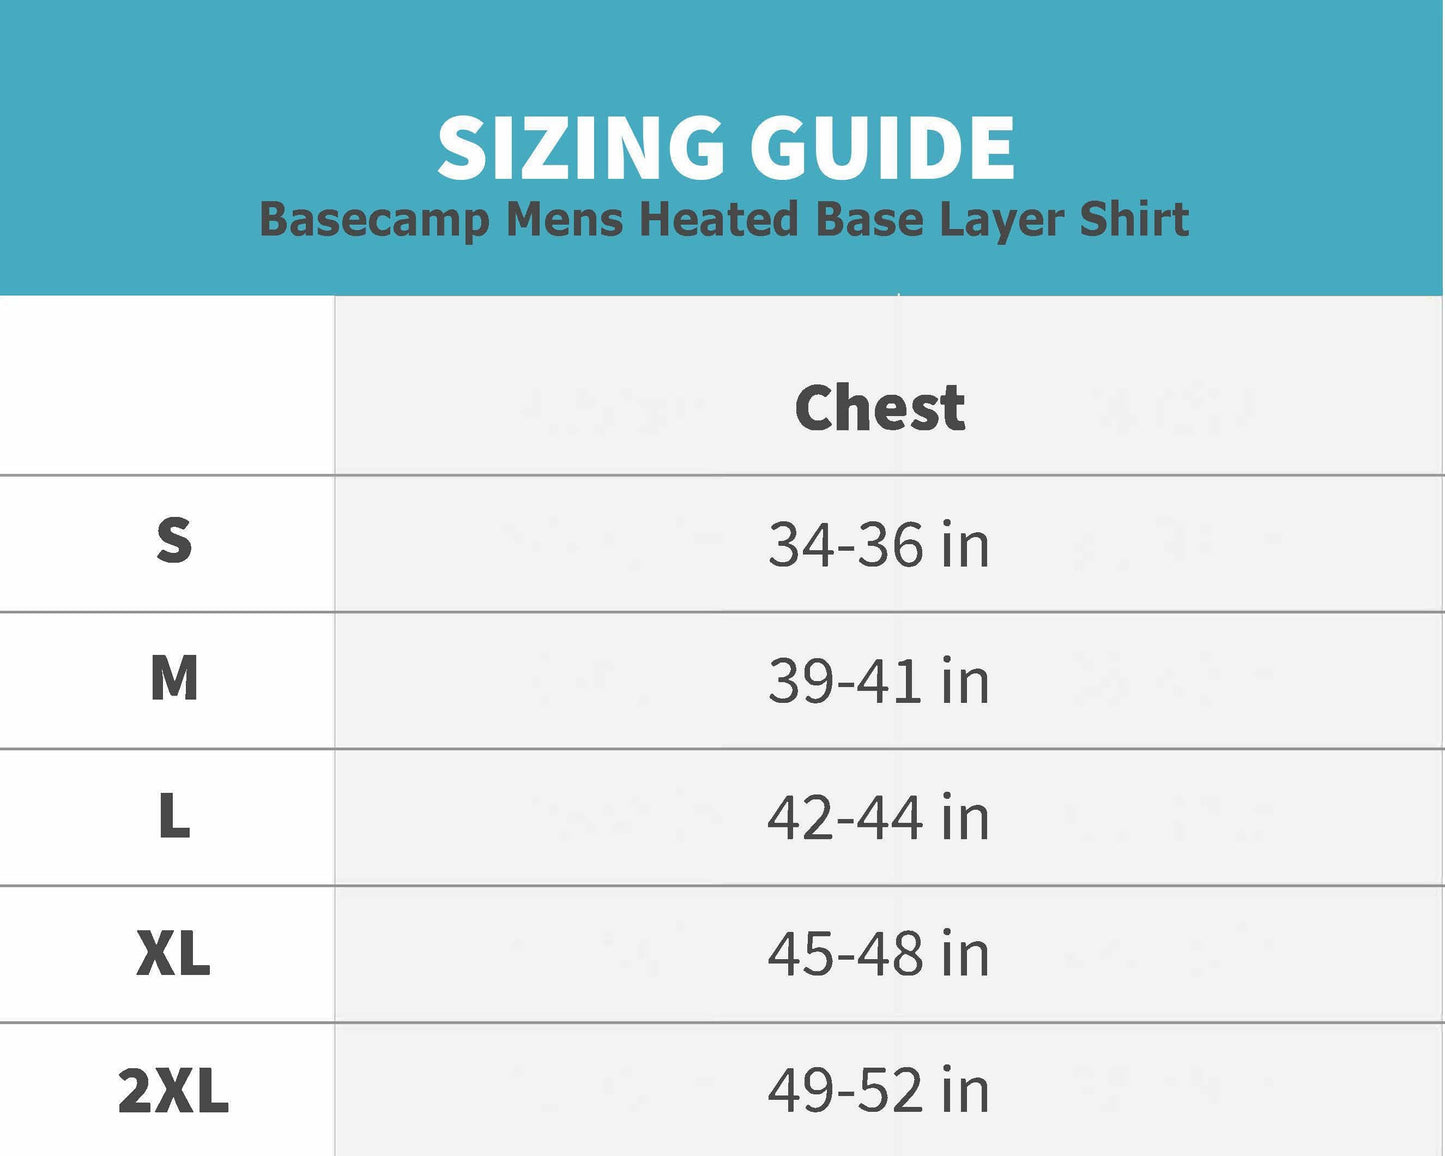 Basecamp Mens Heated Base Layer Shirt